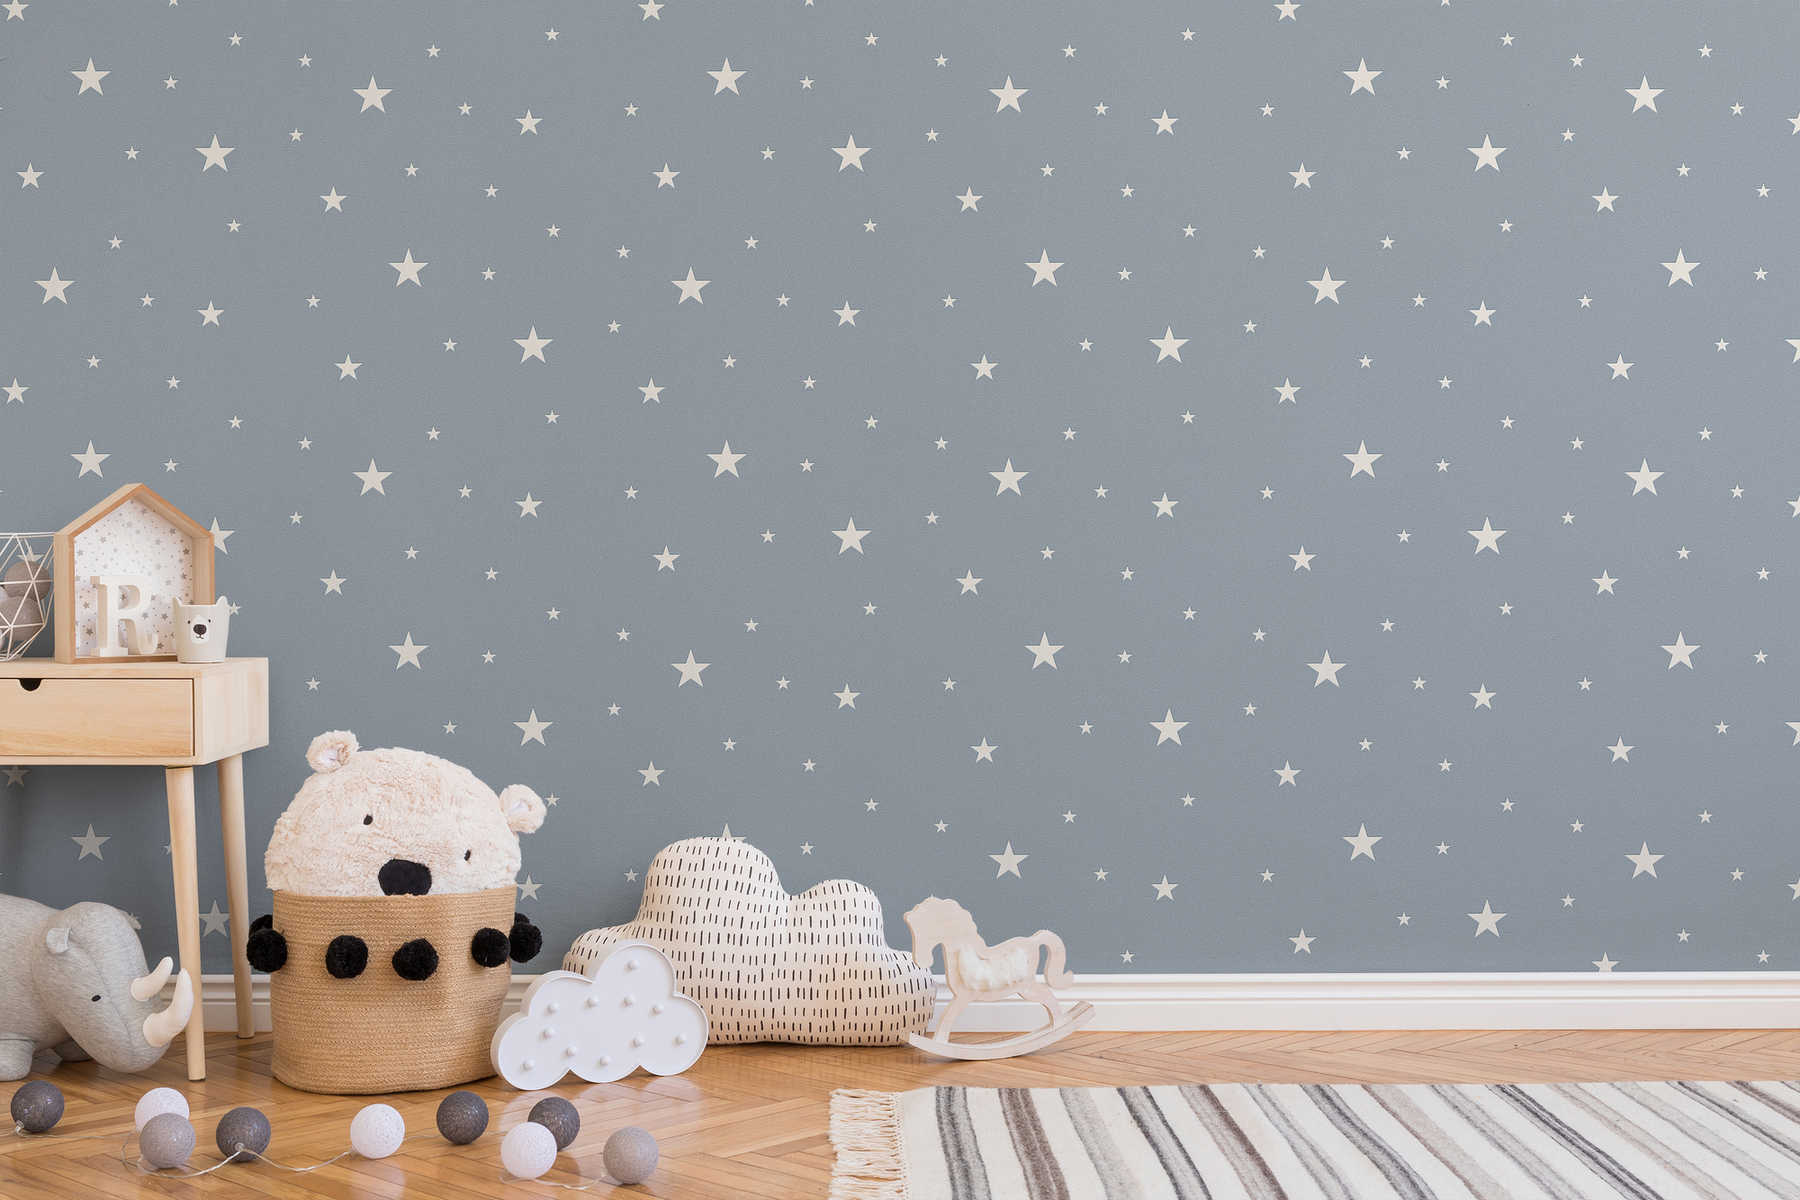             Papier peint lumineux pour chambre d'enfant avec étoiles phosphorescentes - bleu fumé
        